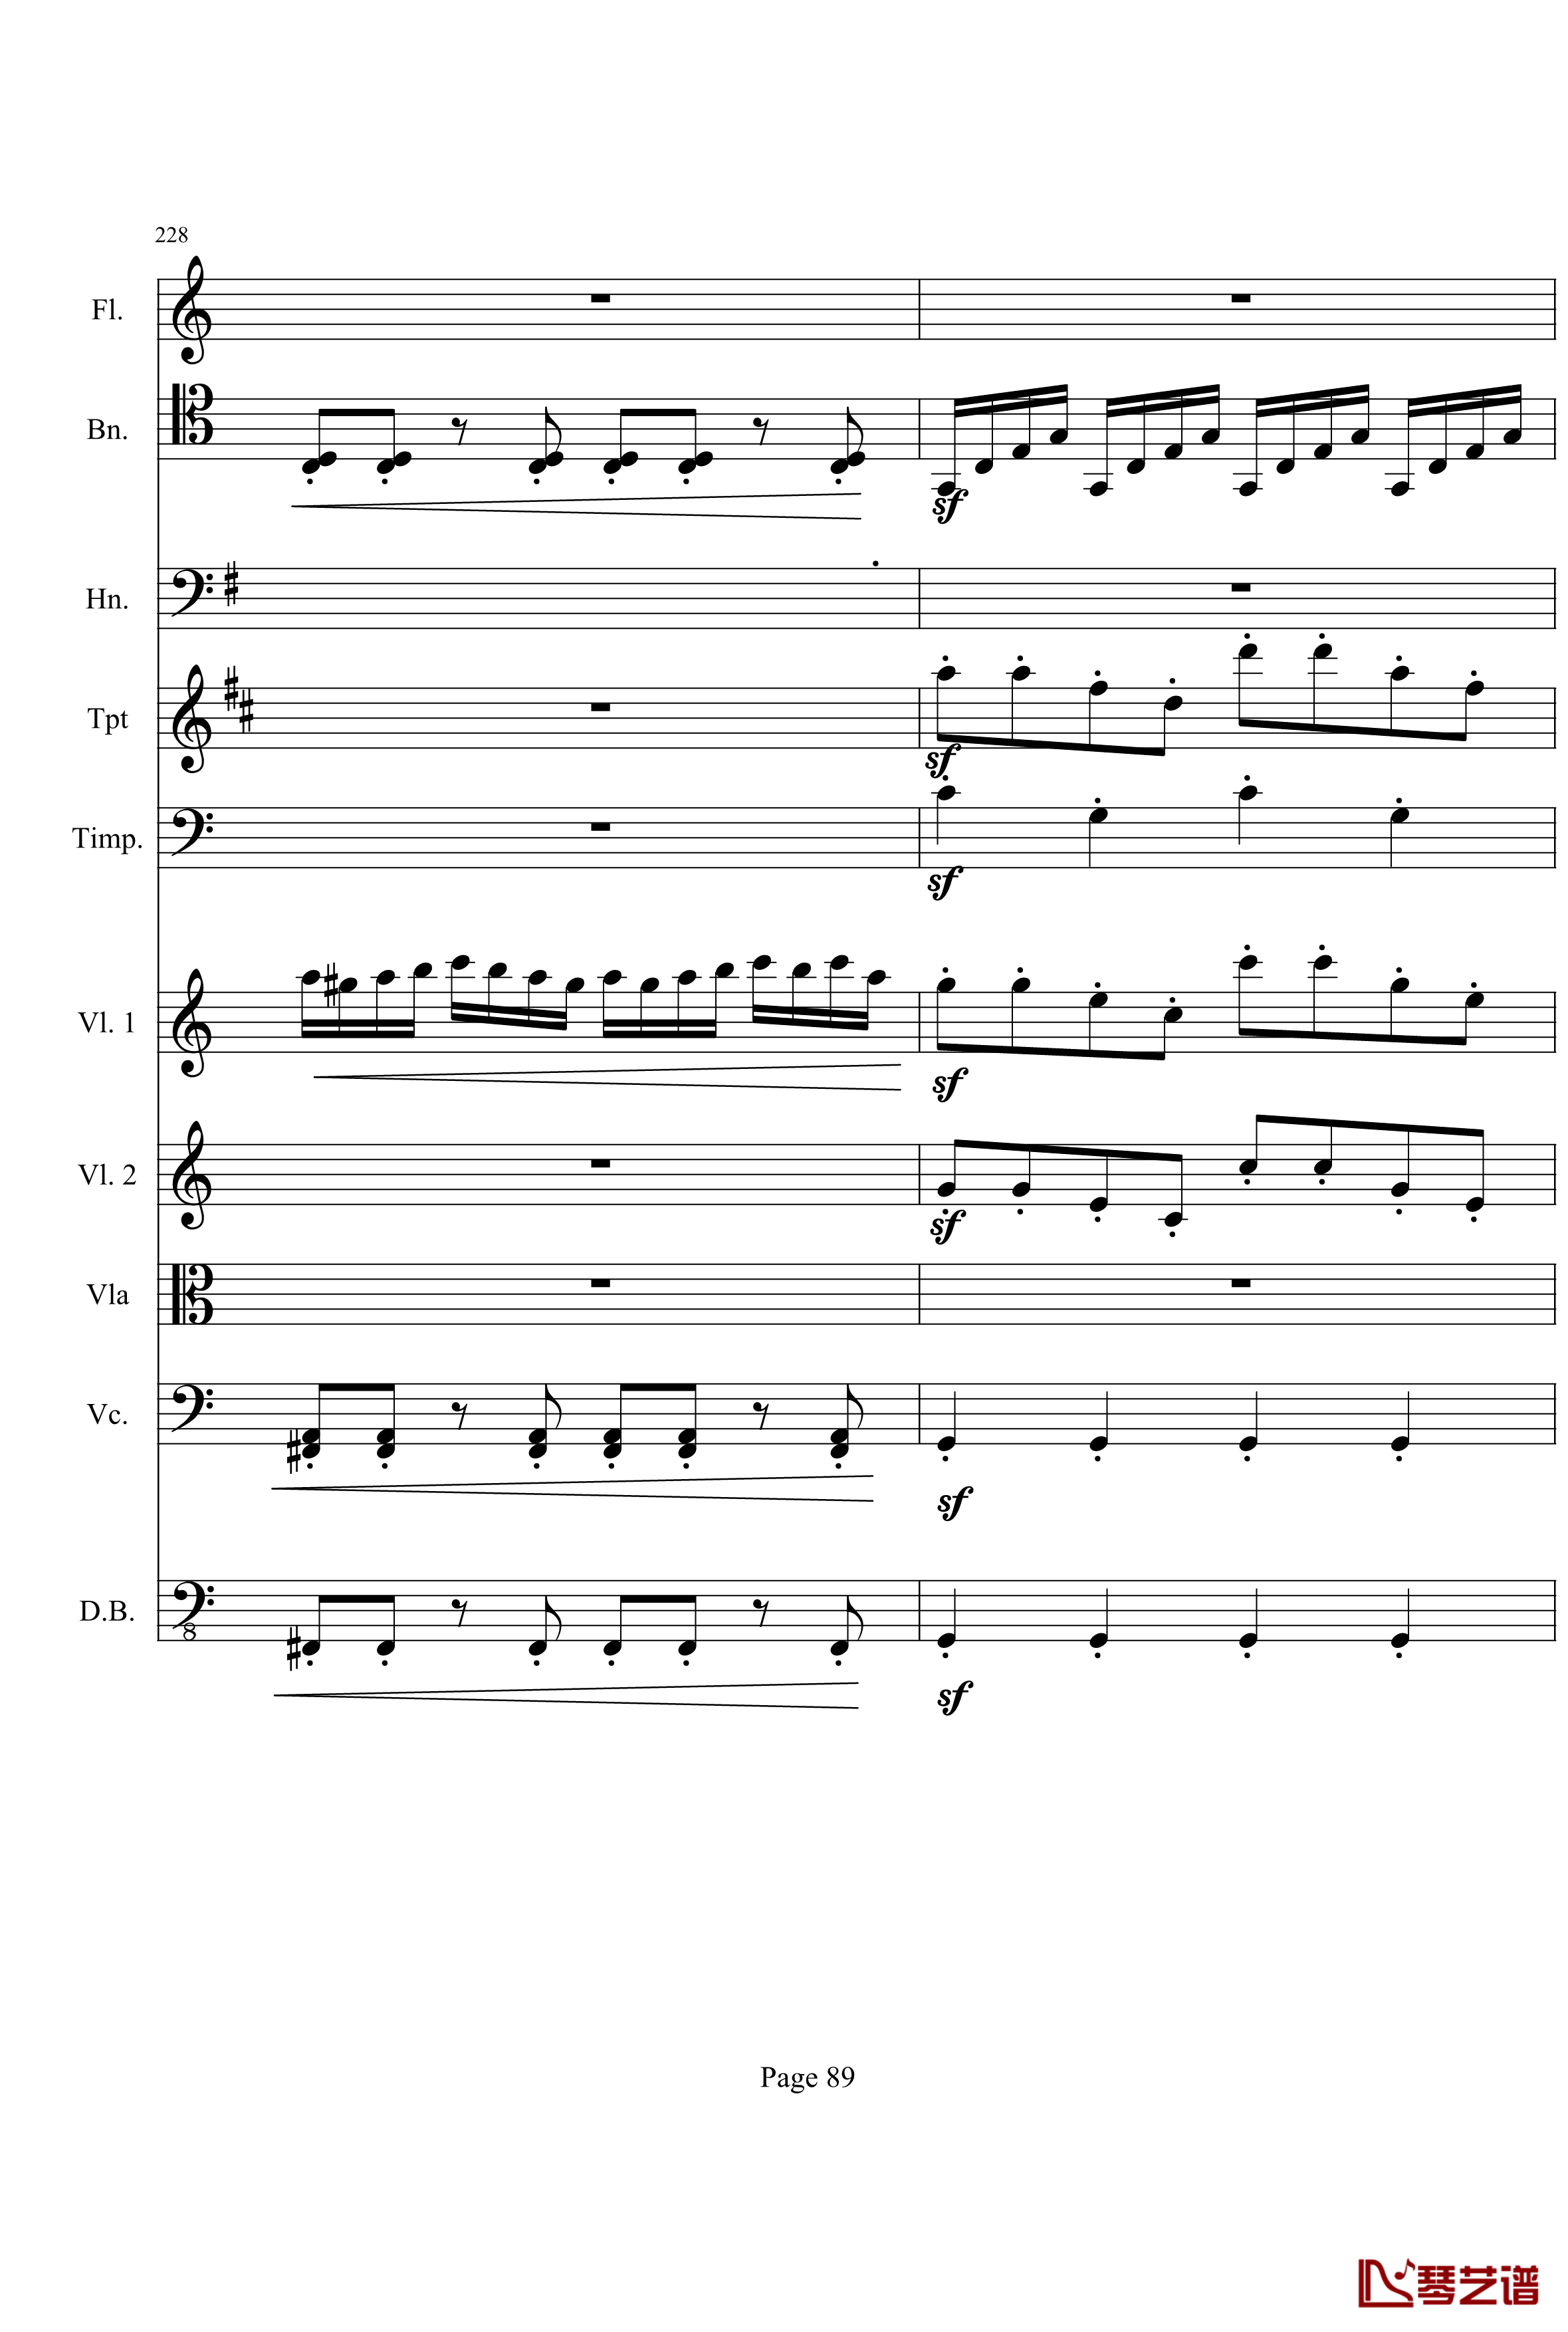 奏鸣曲之交响钢琴谱-第21-Ⅰ-贝多芬-beethoven89